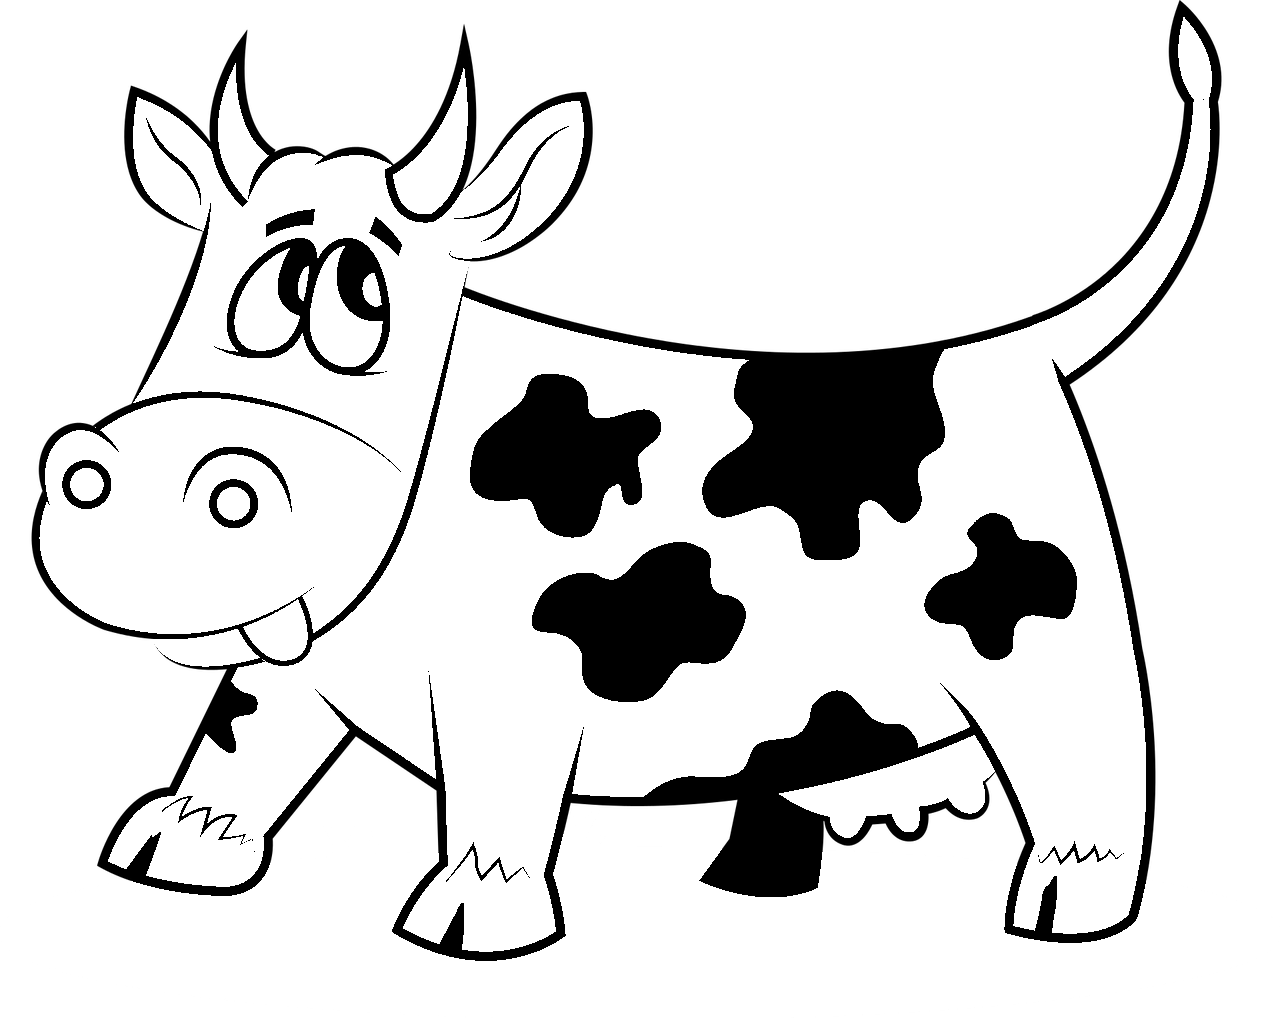 Disegno da colorare di mucca umoristico